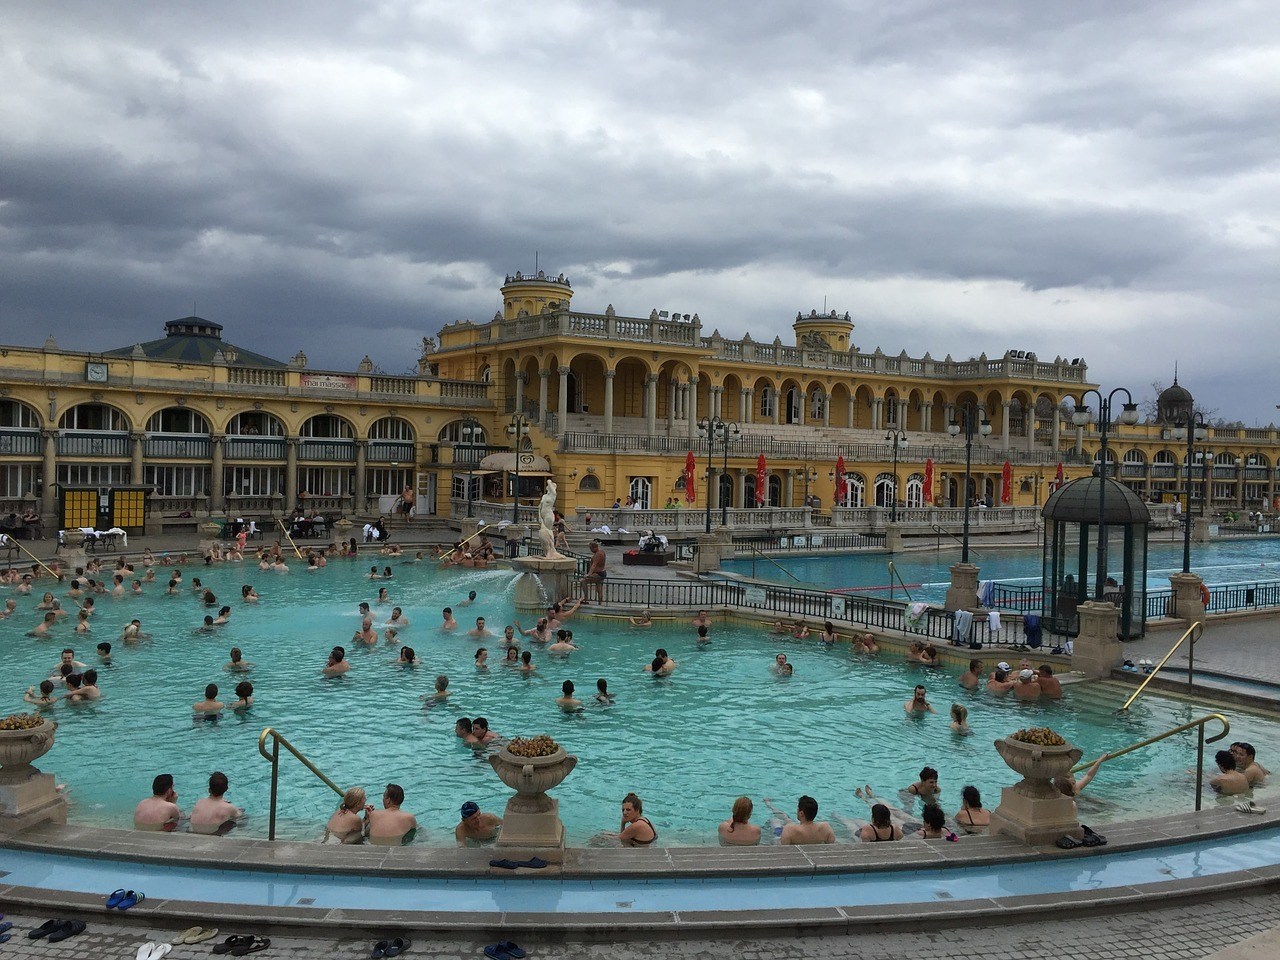 szechenyi spa thermal bath - budapest